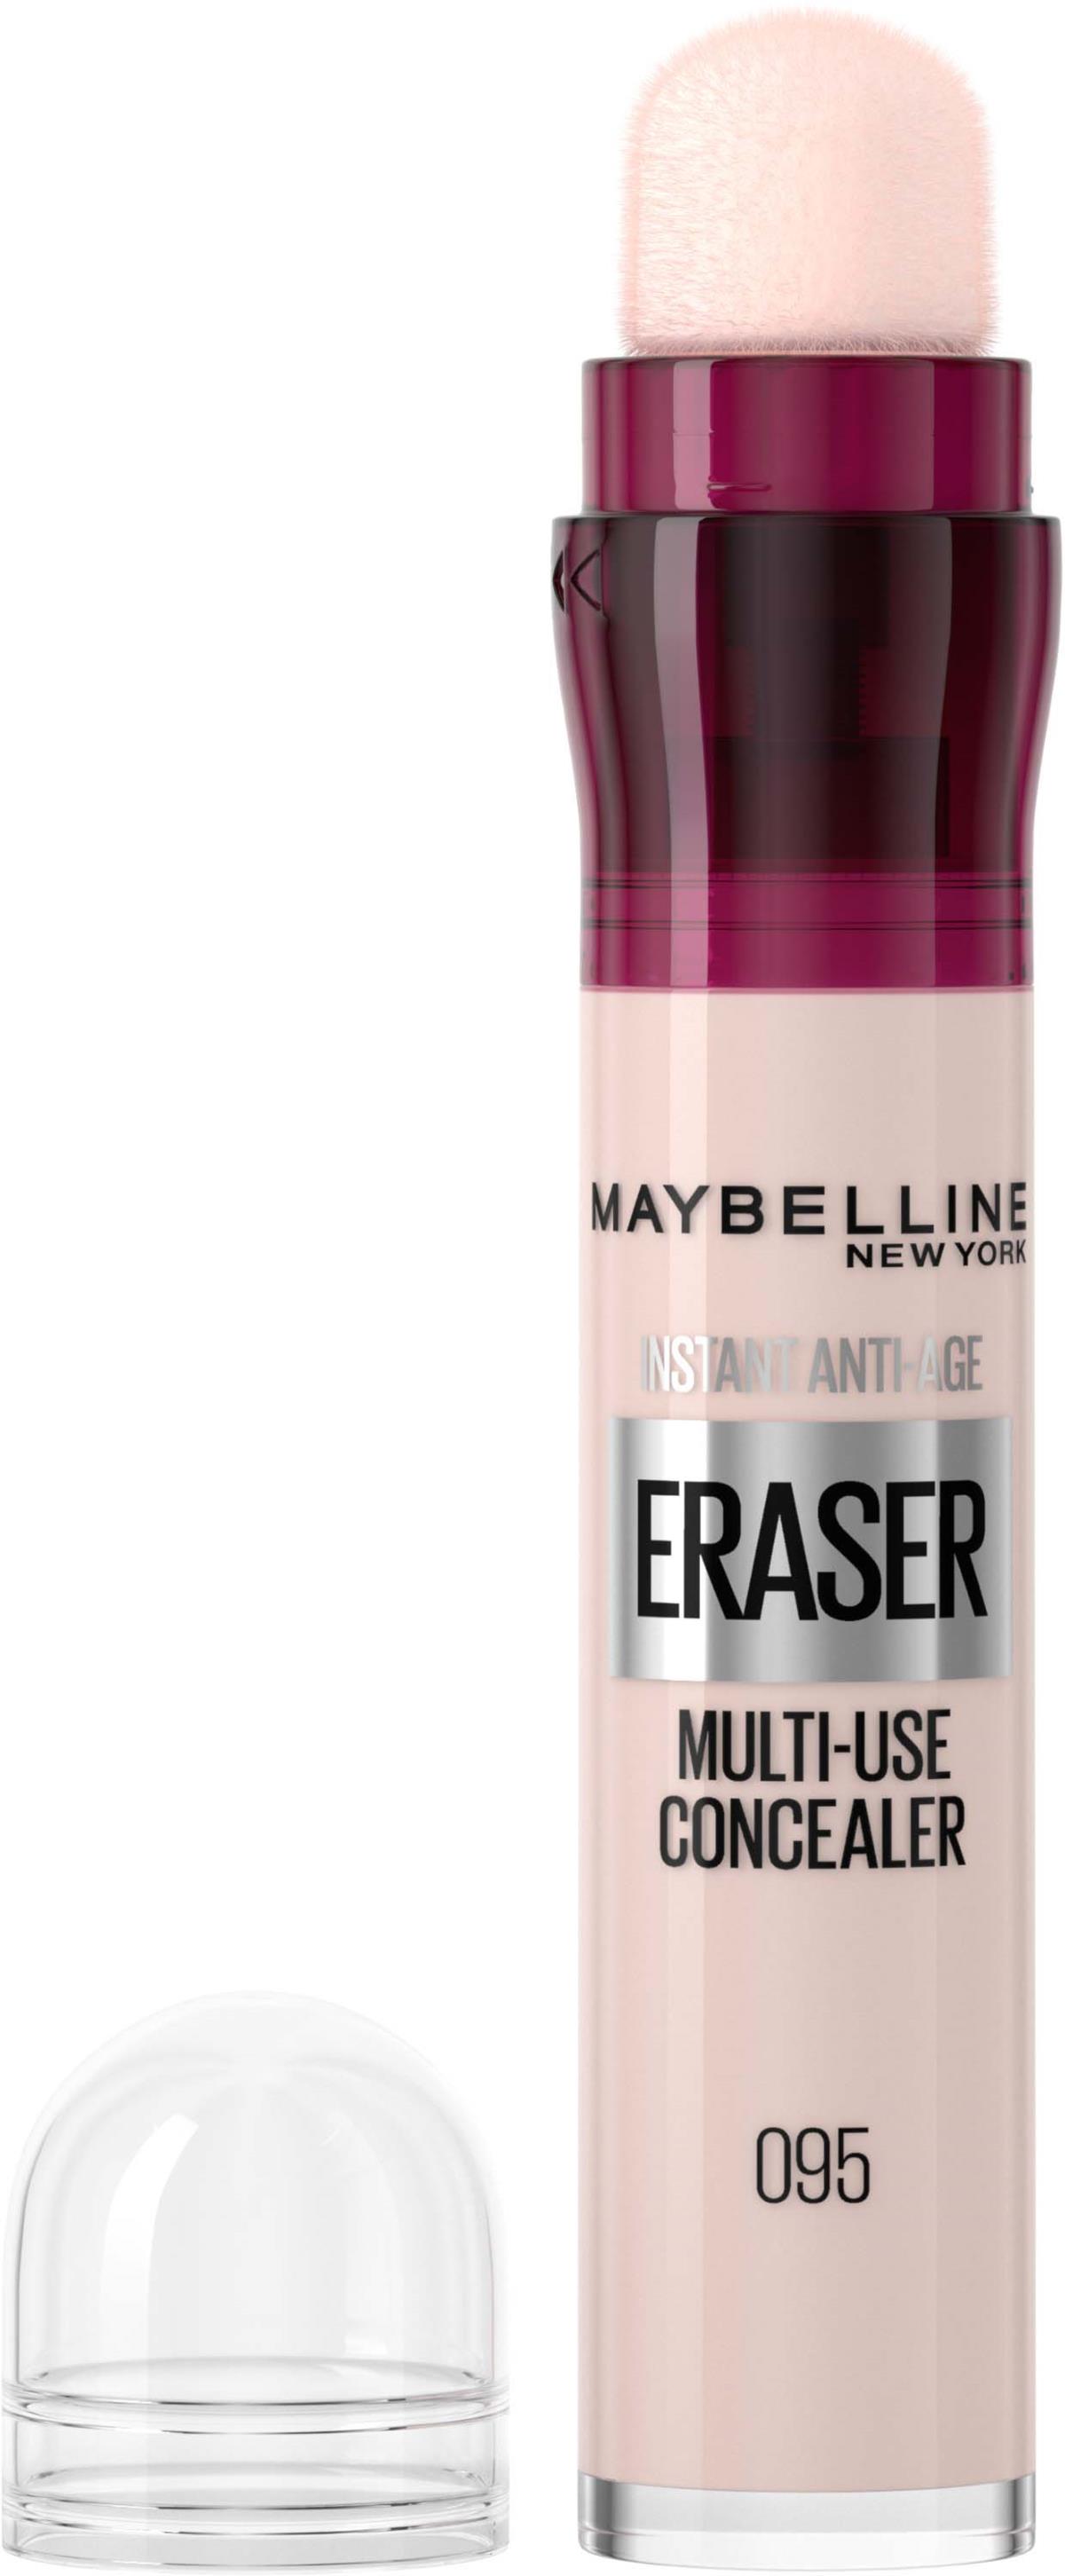 Maybelline New York Eraser Instant Anti-Age Eraser Multi-Use Concealer 95 Cool Ivory